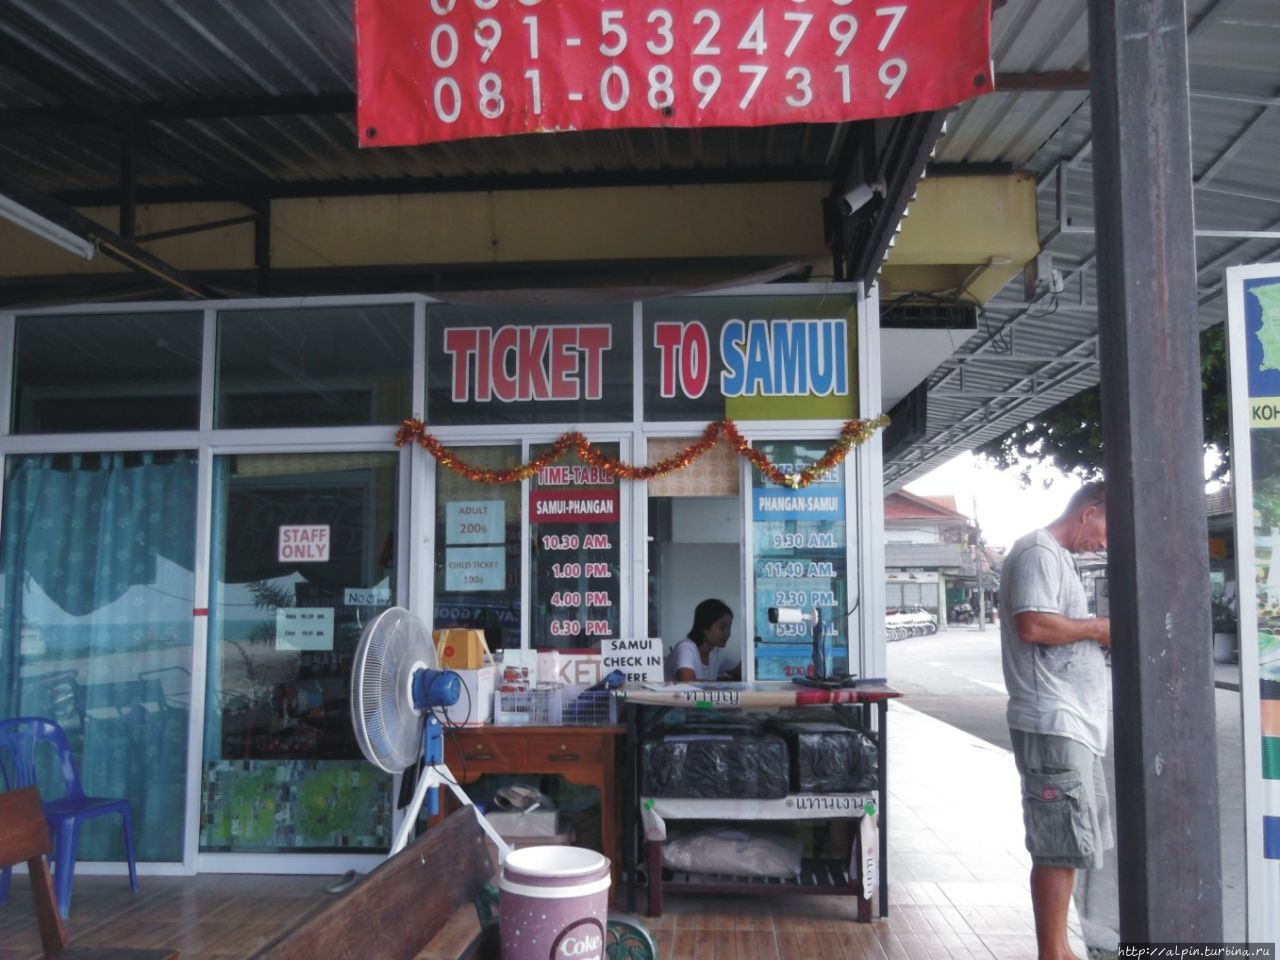 Продажа билетов на пирсе Хаад Рин Ранонг, Таиланд